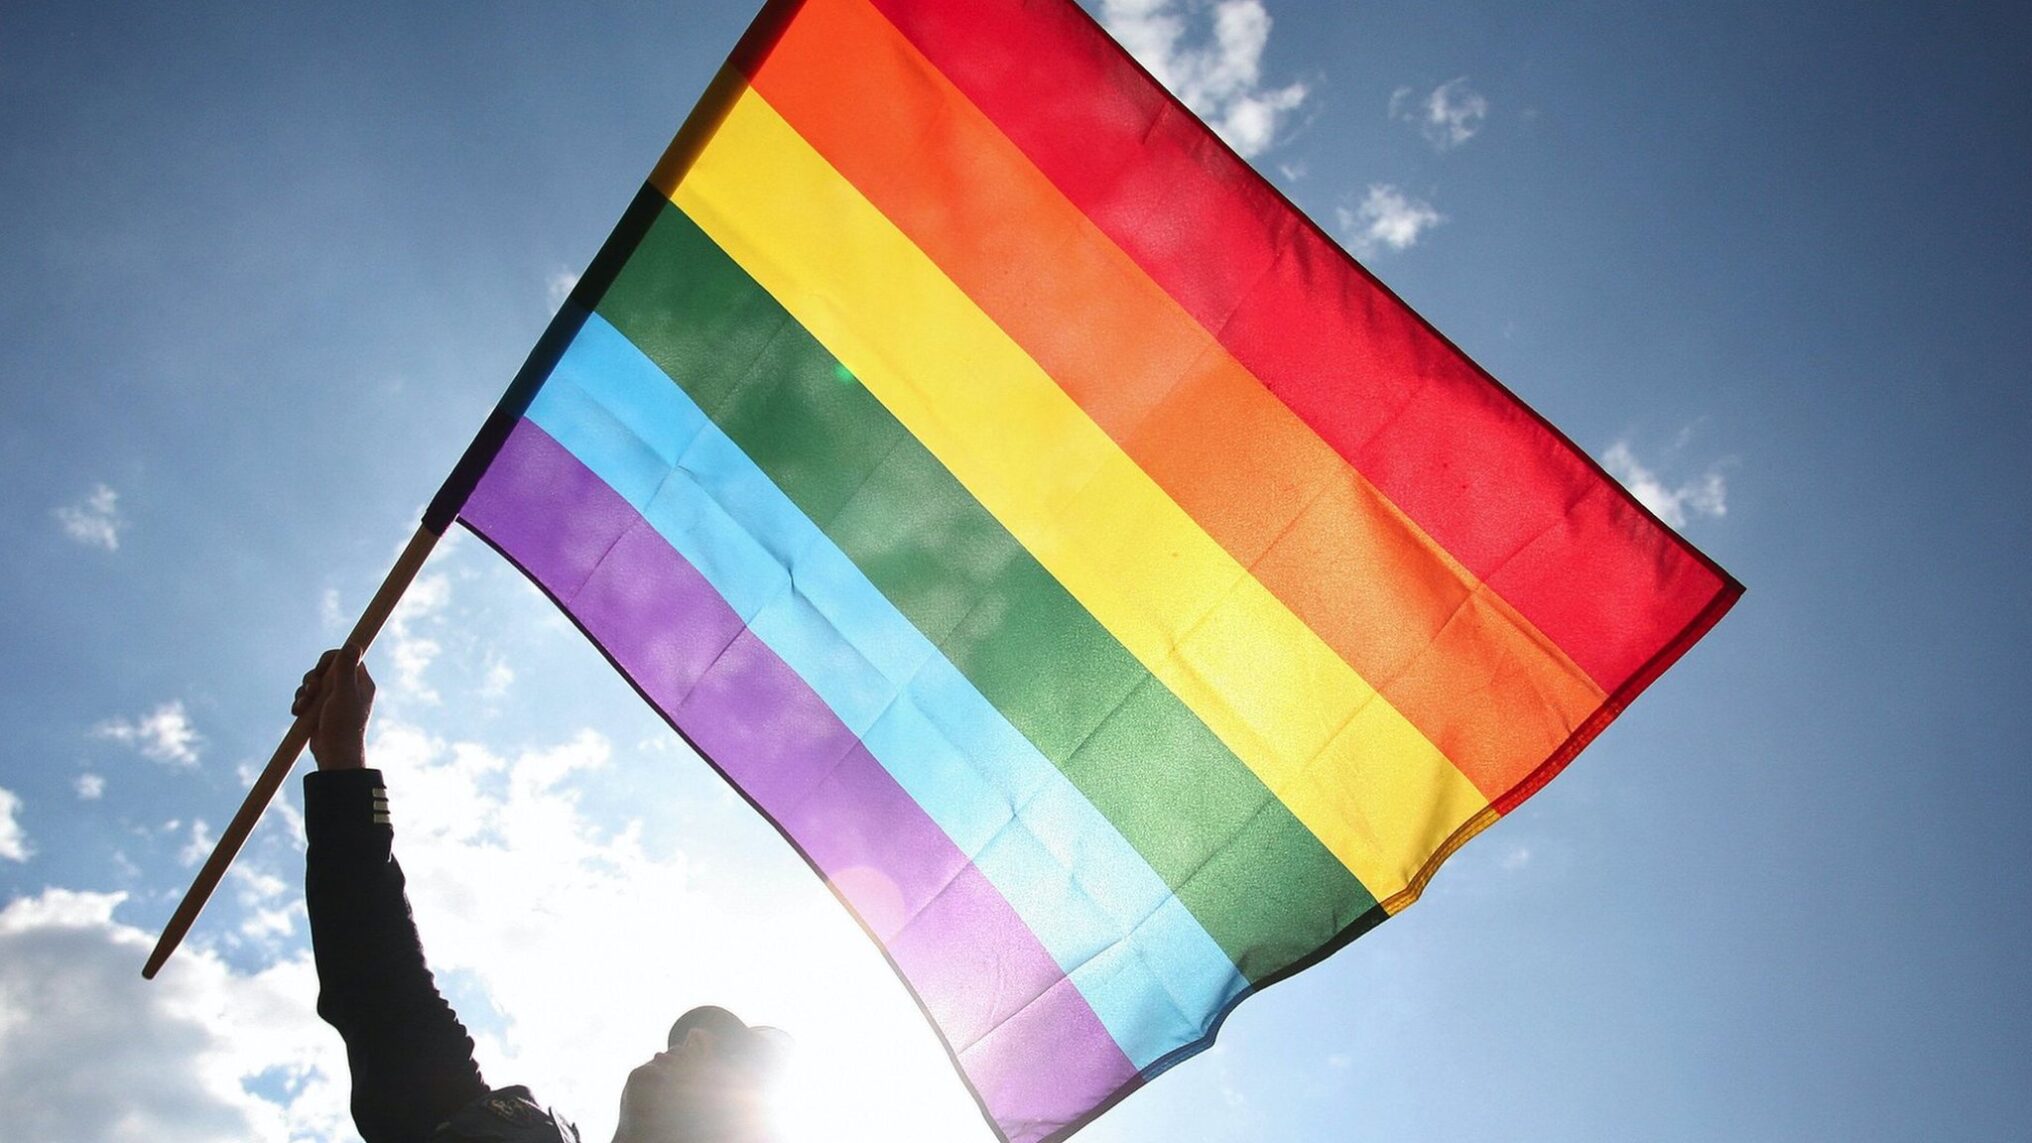 الفرق بين ألوان قوس قزح وعلم المثليين